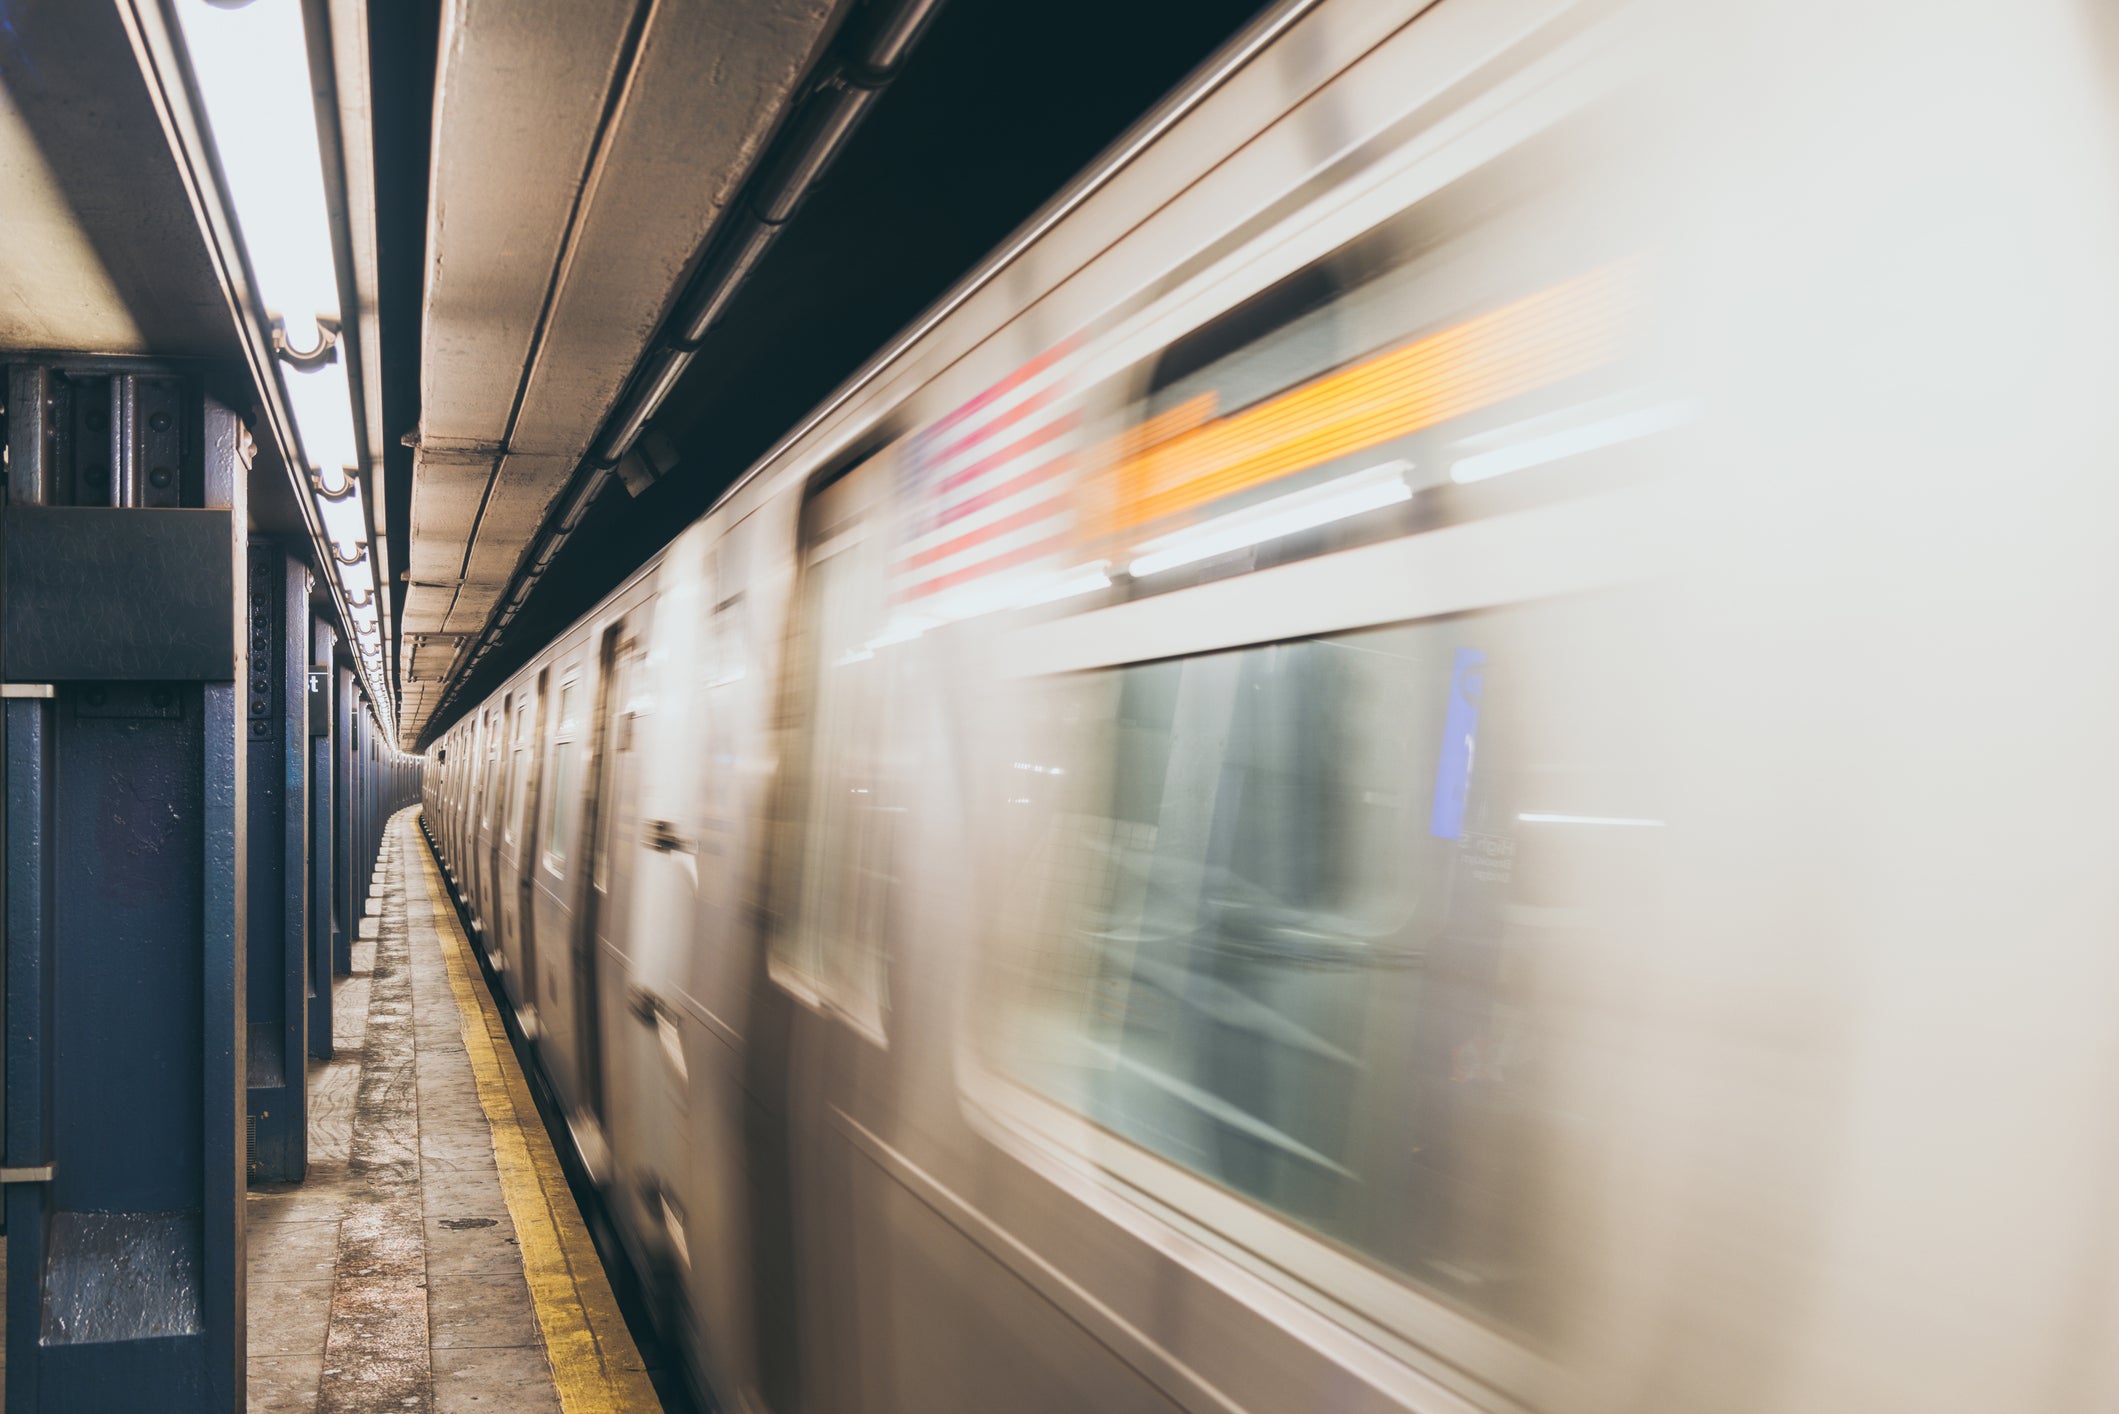 Un joven de 25 años fue apuñalado en un tren subterráneo de Brooklyn el sábado por la noche